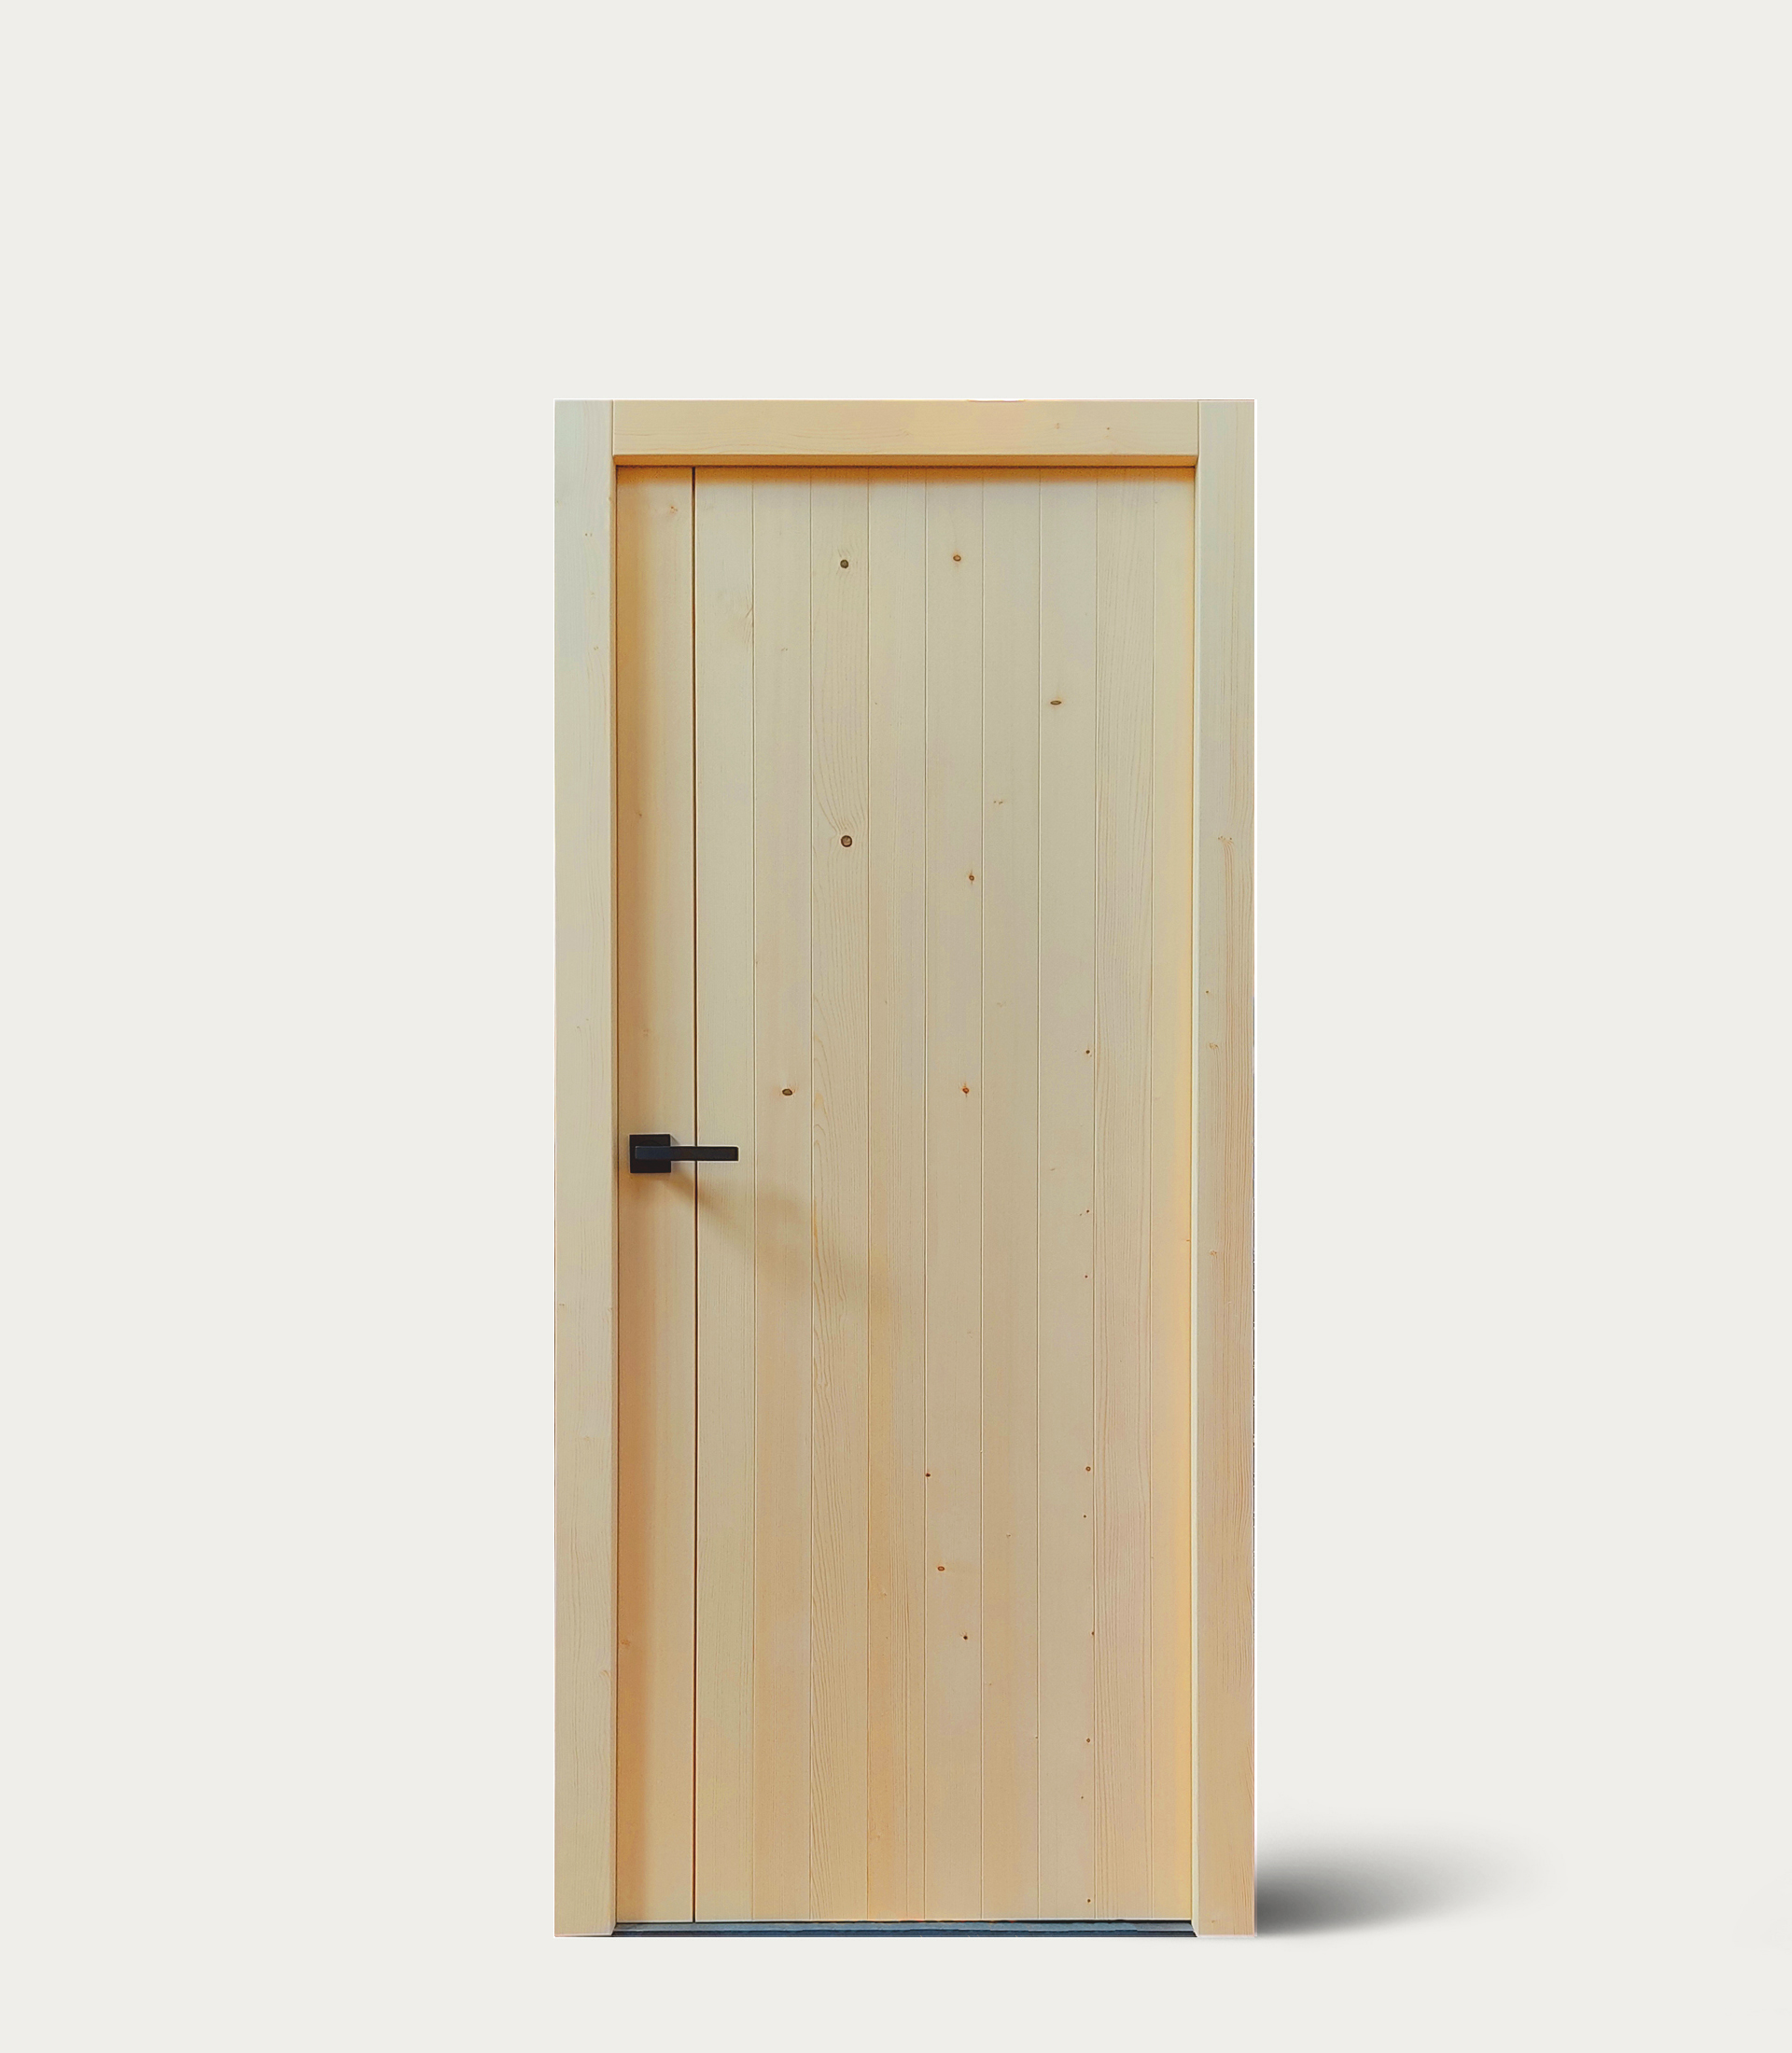 Rubner Türen lancia NOEMI, la nuova porta in legno massello che non fa uso di colle o adesivi chimici